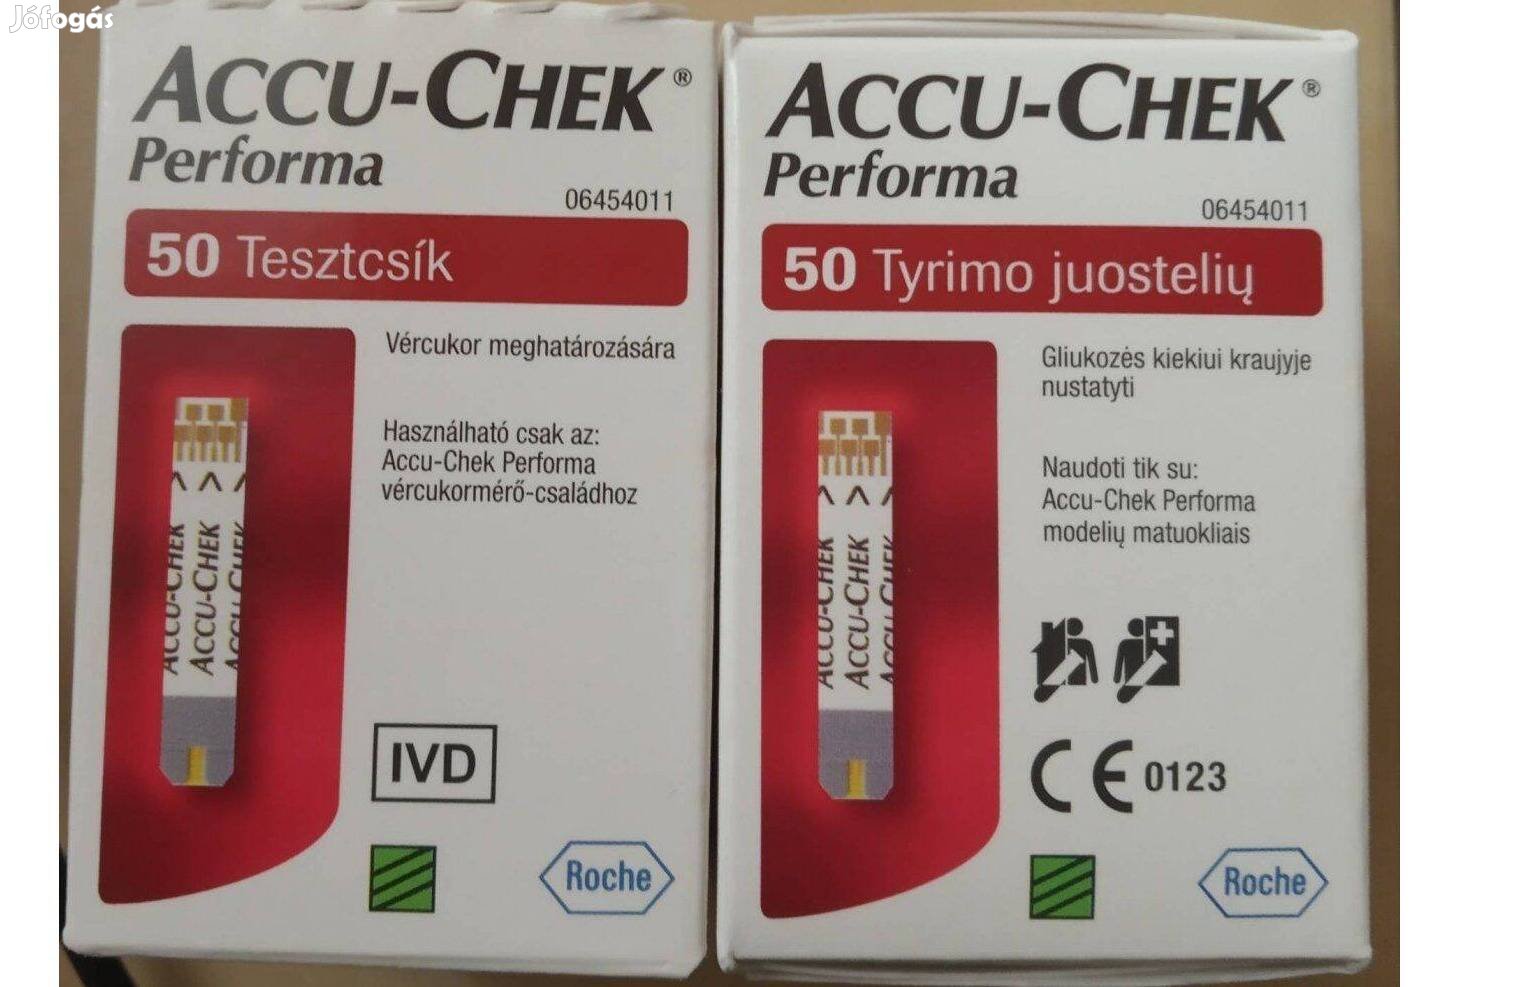 Accu-Chek Performa vércukorszint mérő tesztcsík. Bontatlan, új